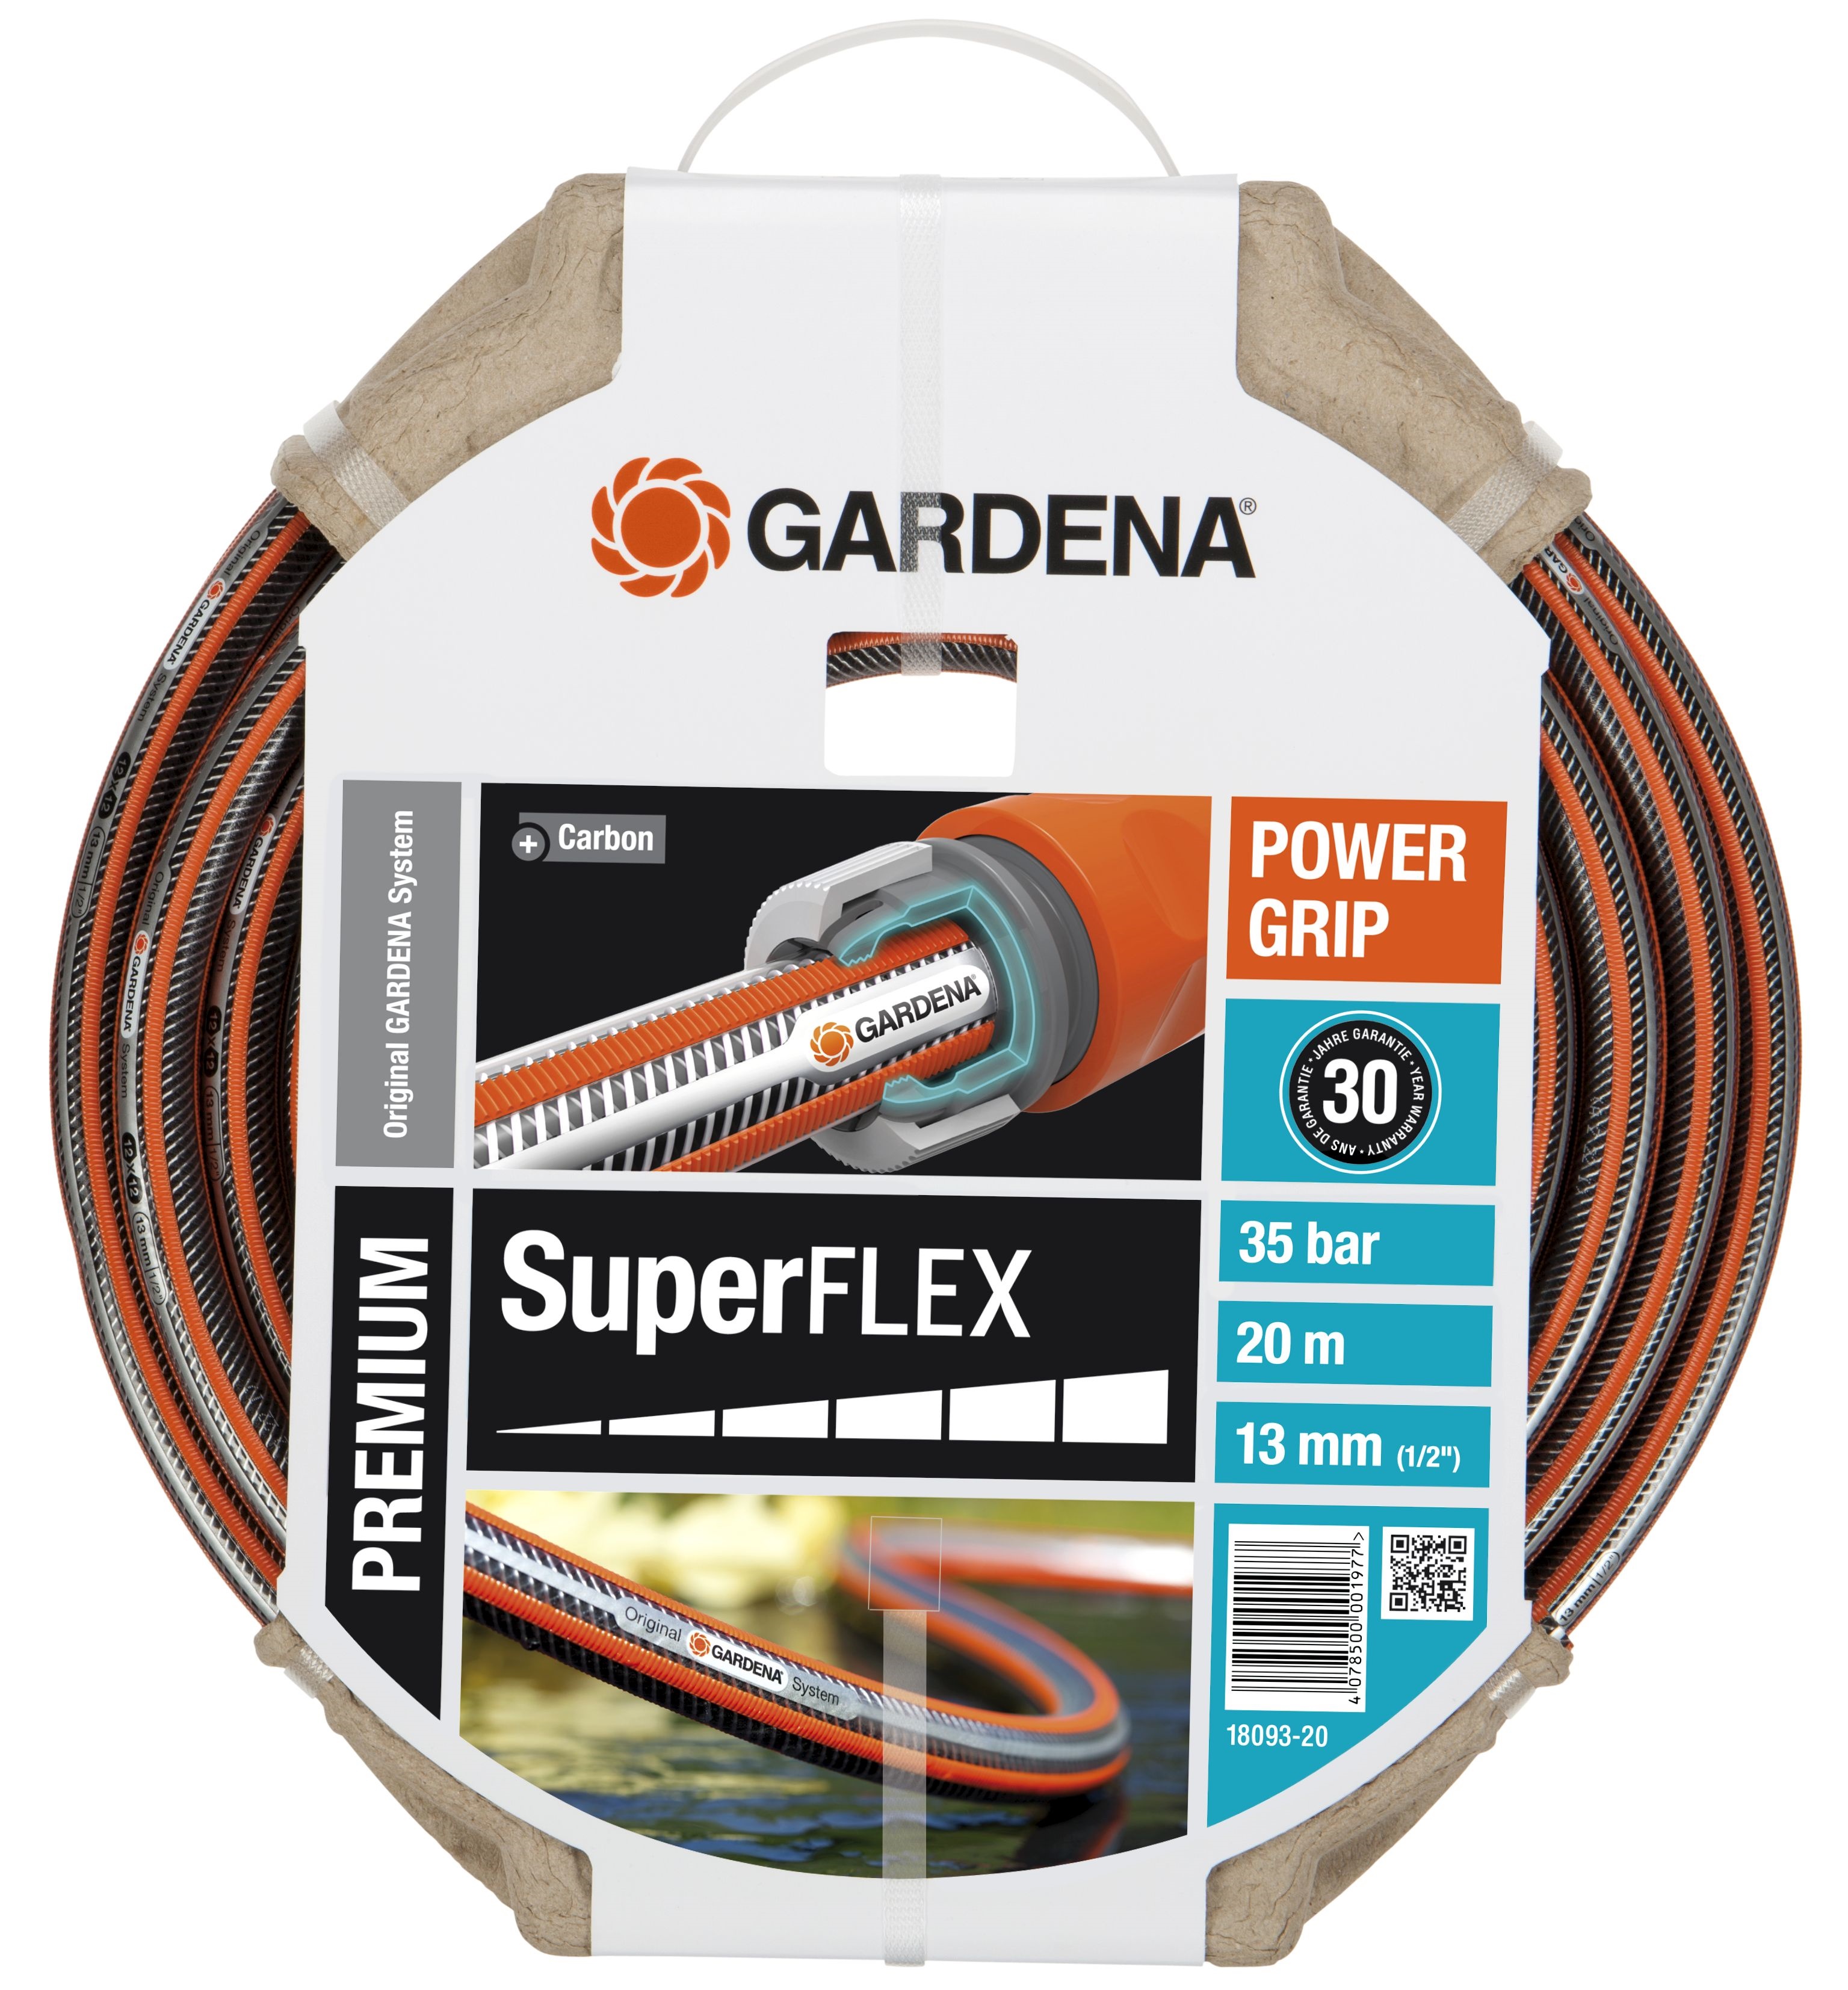 Afbeelding Gardena Tuinslang Premium SuperFlex Ø 13 mm 20 Meter door Haxo.nl